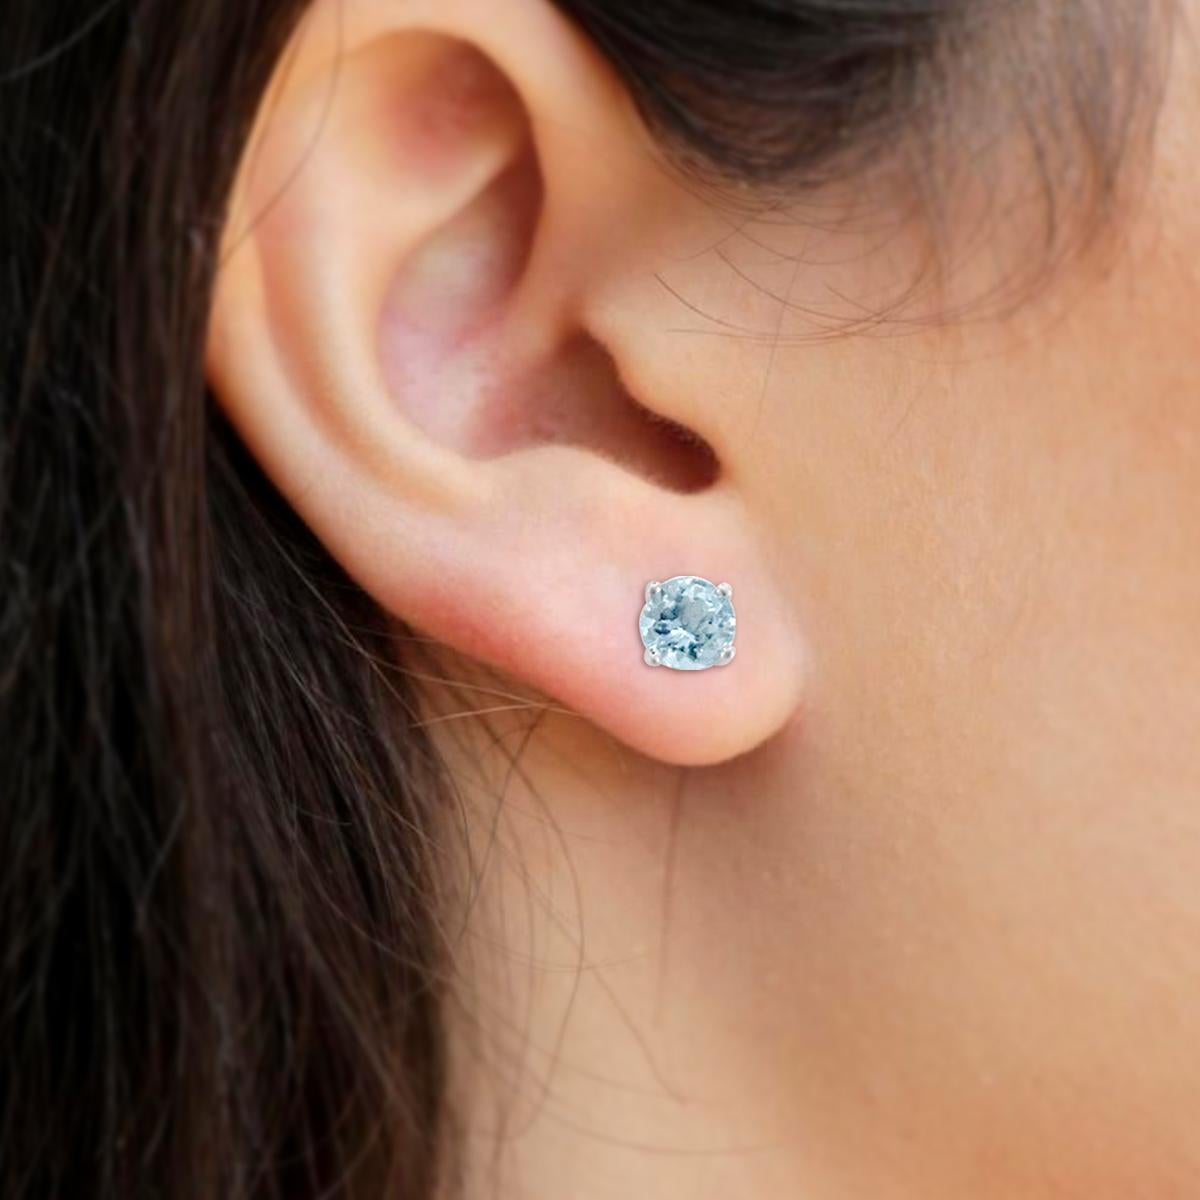 9mm earrings actual size